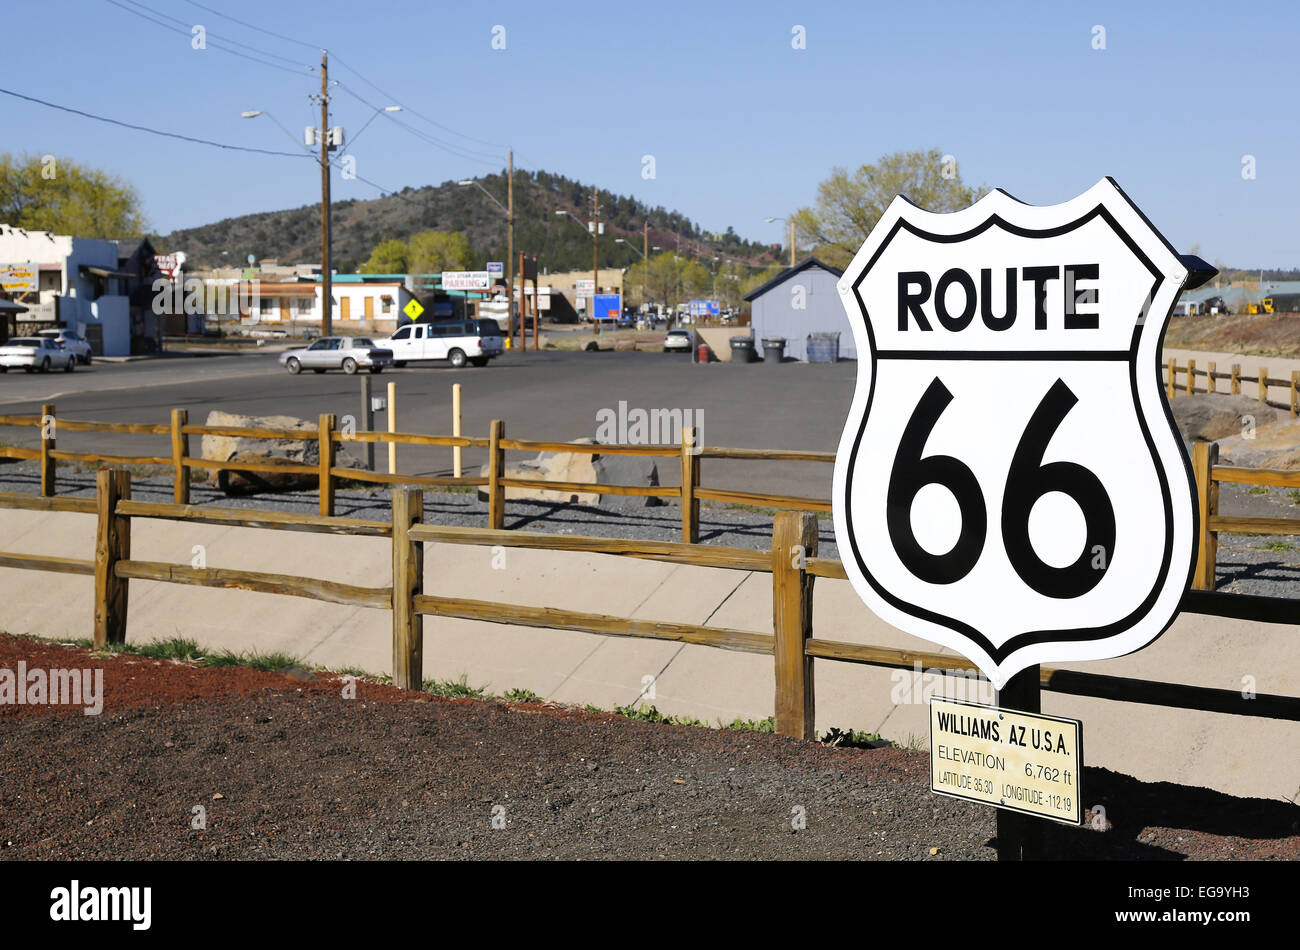 Vereinigte Staaten, 2013: die historische Route 66 (auch bekannt als Will Rogers Autobahn, Main Street of America oder der Mother Road) Stockfoto